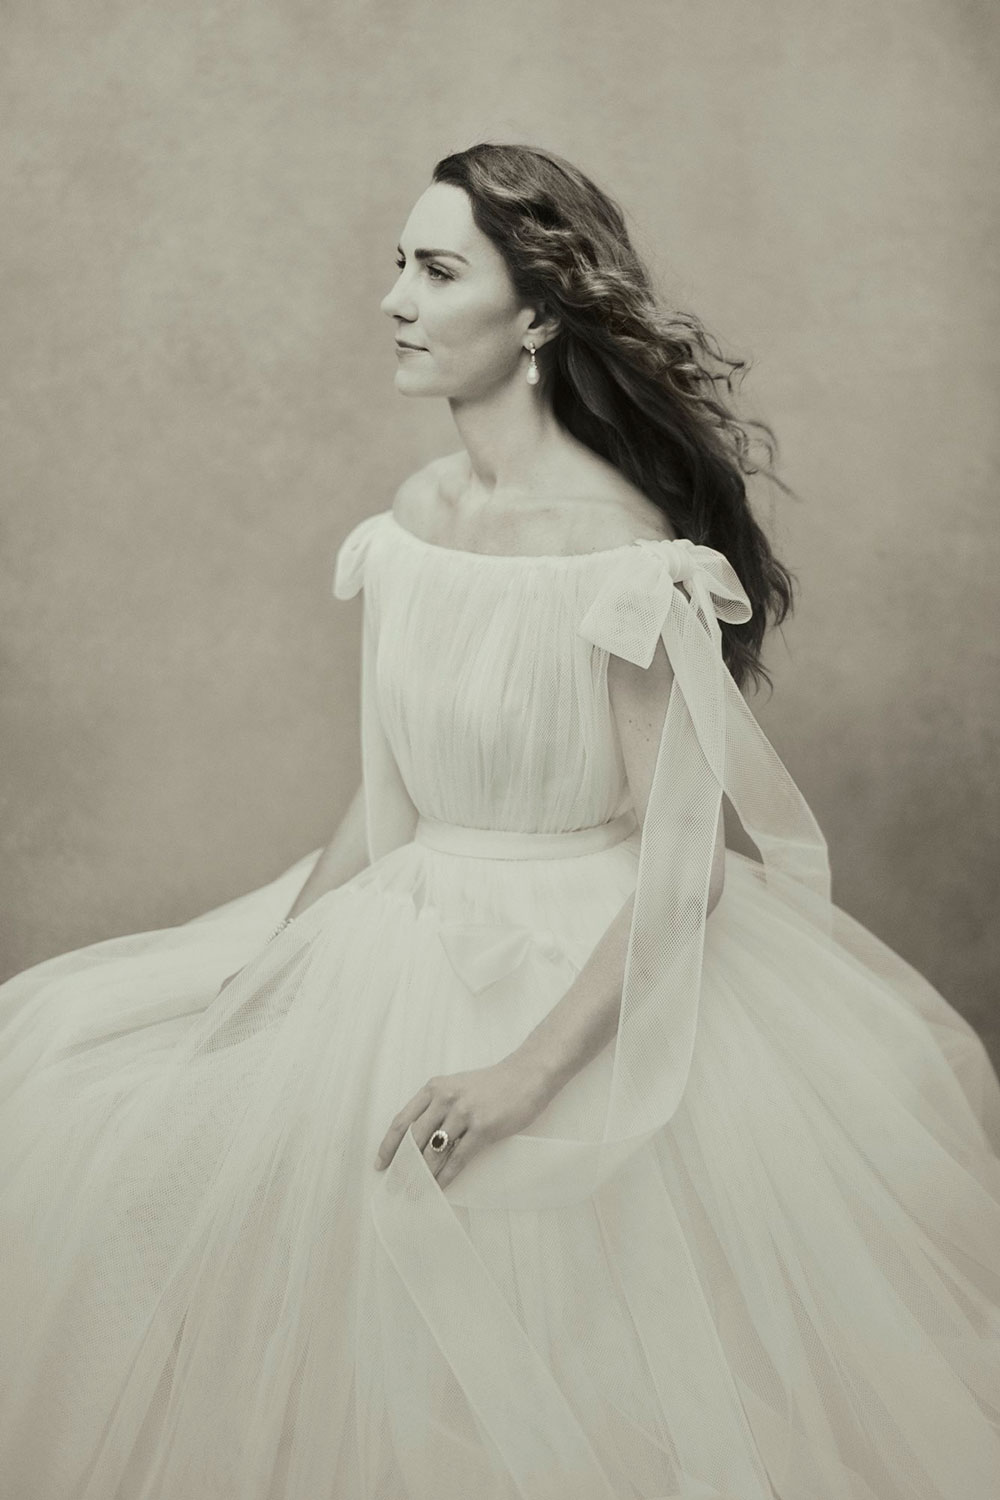 Công nương Kate Middleton đã tái thể hiện bức ảnh chân dung của Cecil Beaton, nhiếp ảnh gia nổi tiếng với những bức chân dung của Nữ hoàng và Công chúa Margaret.